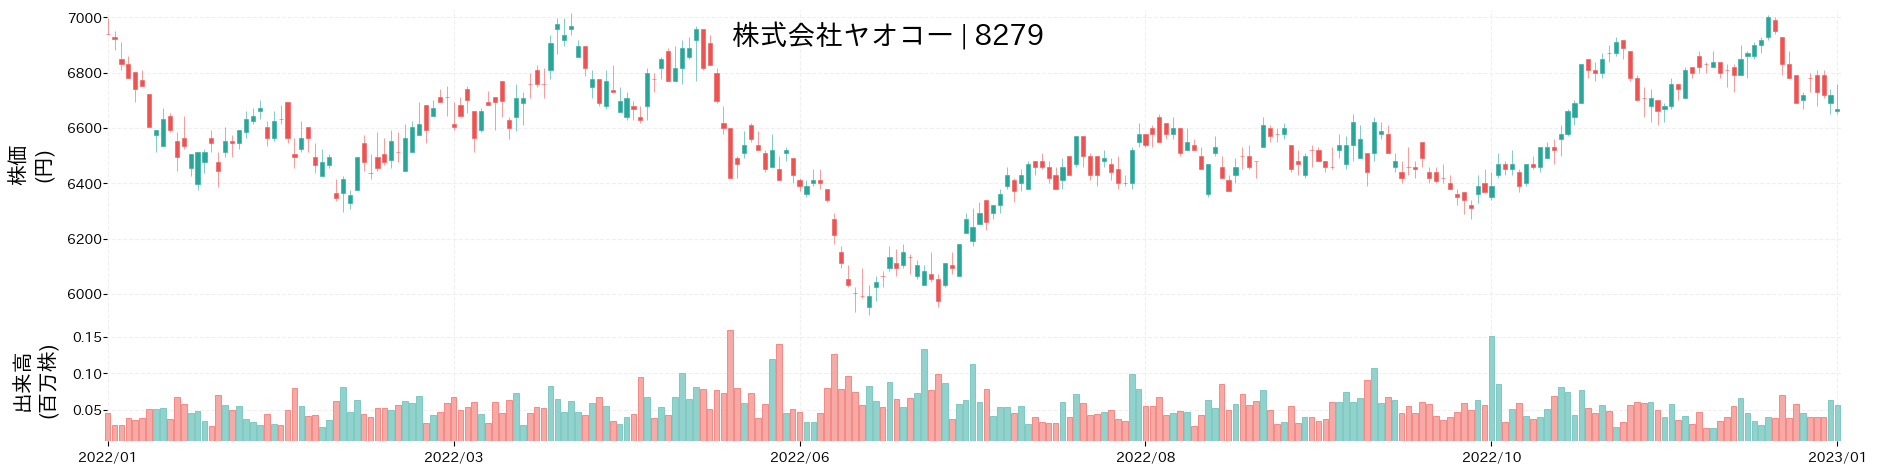 ヤオコーの株価推移(2022)